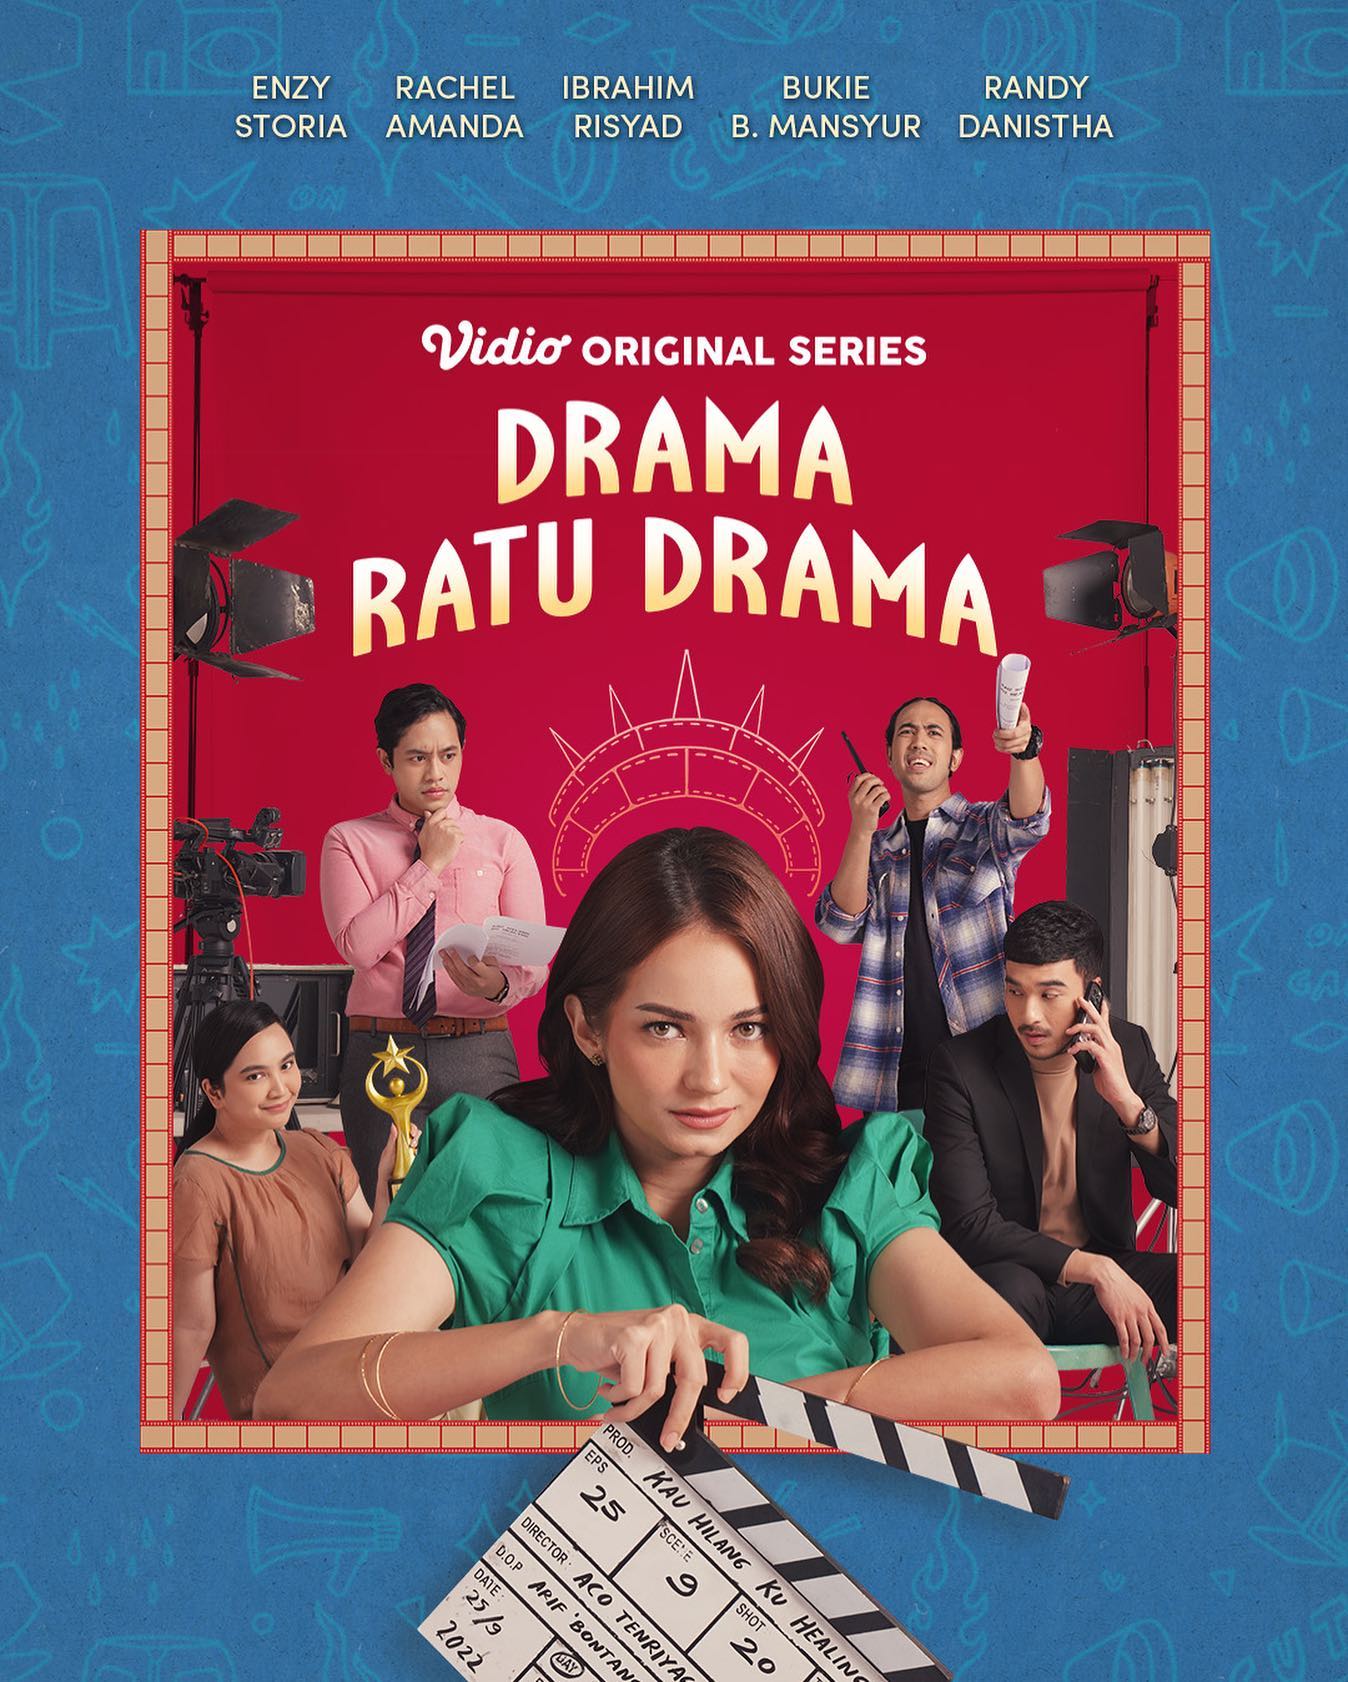 TV ratings for Drama Ratu Drama in Portugal. Vidio TV series